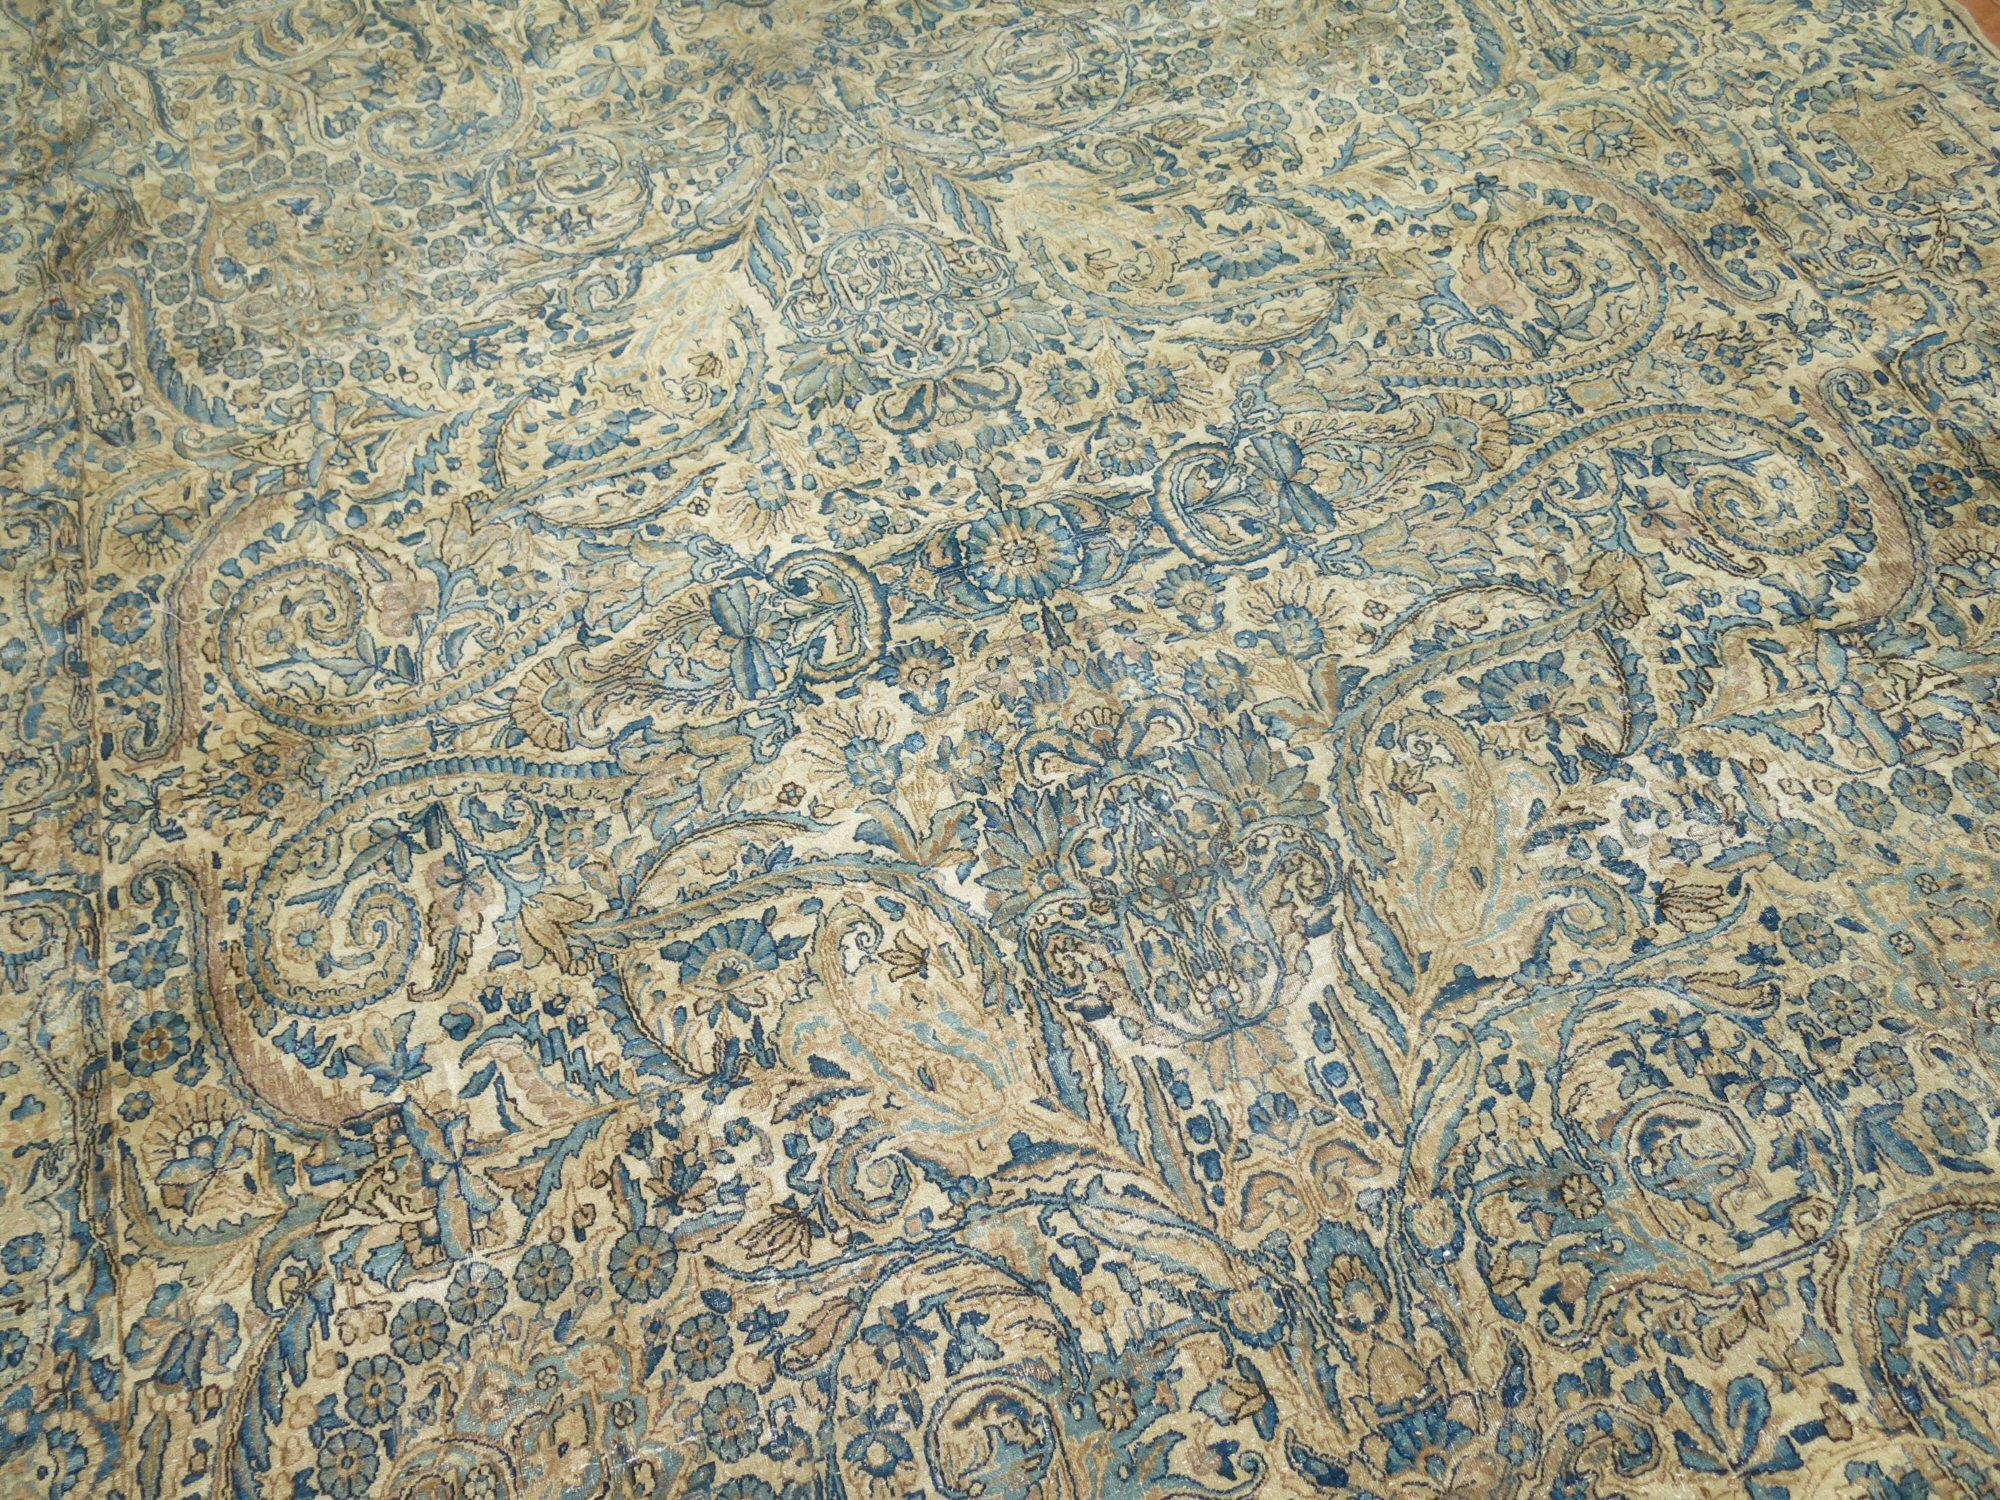 Ein übergroßer persischer Teppich mit formalem Design aus dem frühen 20. Jahrhundert in hübschen Grün-, Blau- und Khakitönen

Maße: 9'5'' x 17'8''.